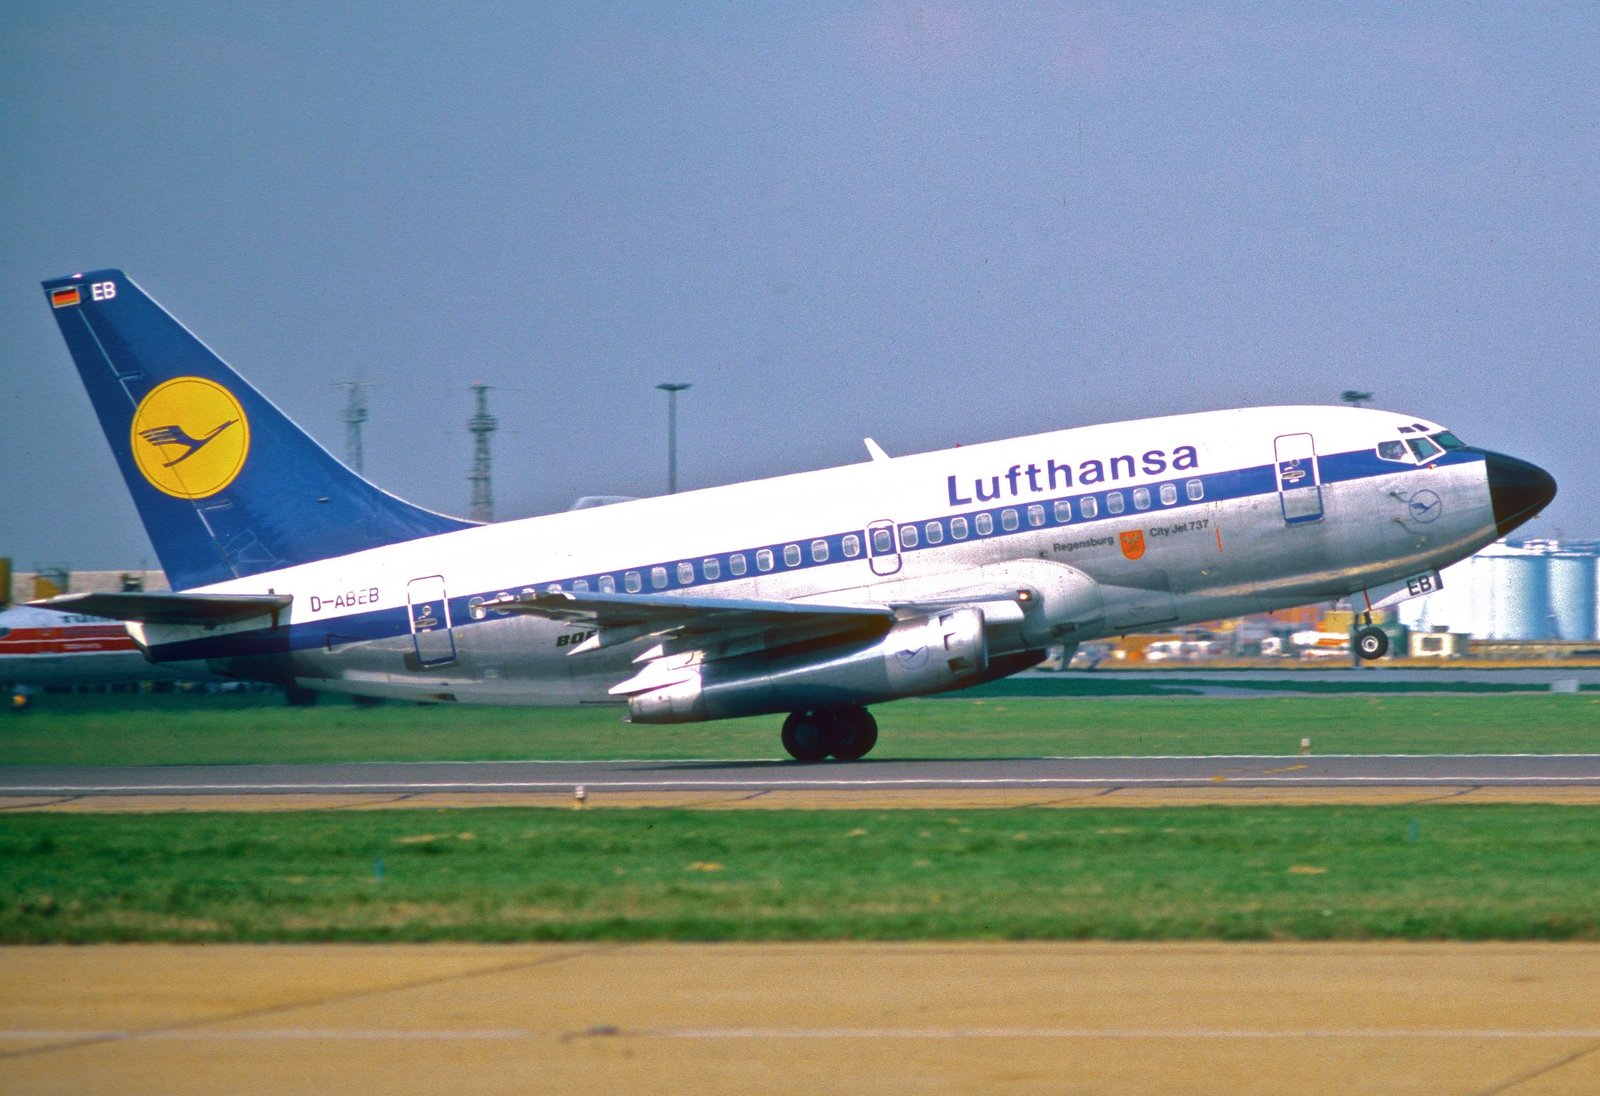 Lufthansa recibió el 27 de diciembre de 1967 los dos Boeing 737-100, el D-ABEB y el D-ABEC. El D-ABEA fue entregado en abril de 1968. Foto: Aero Icarus